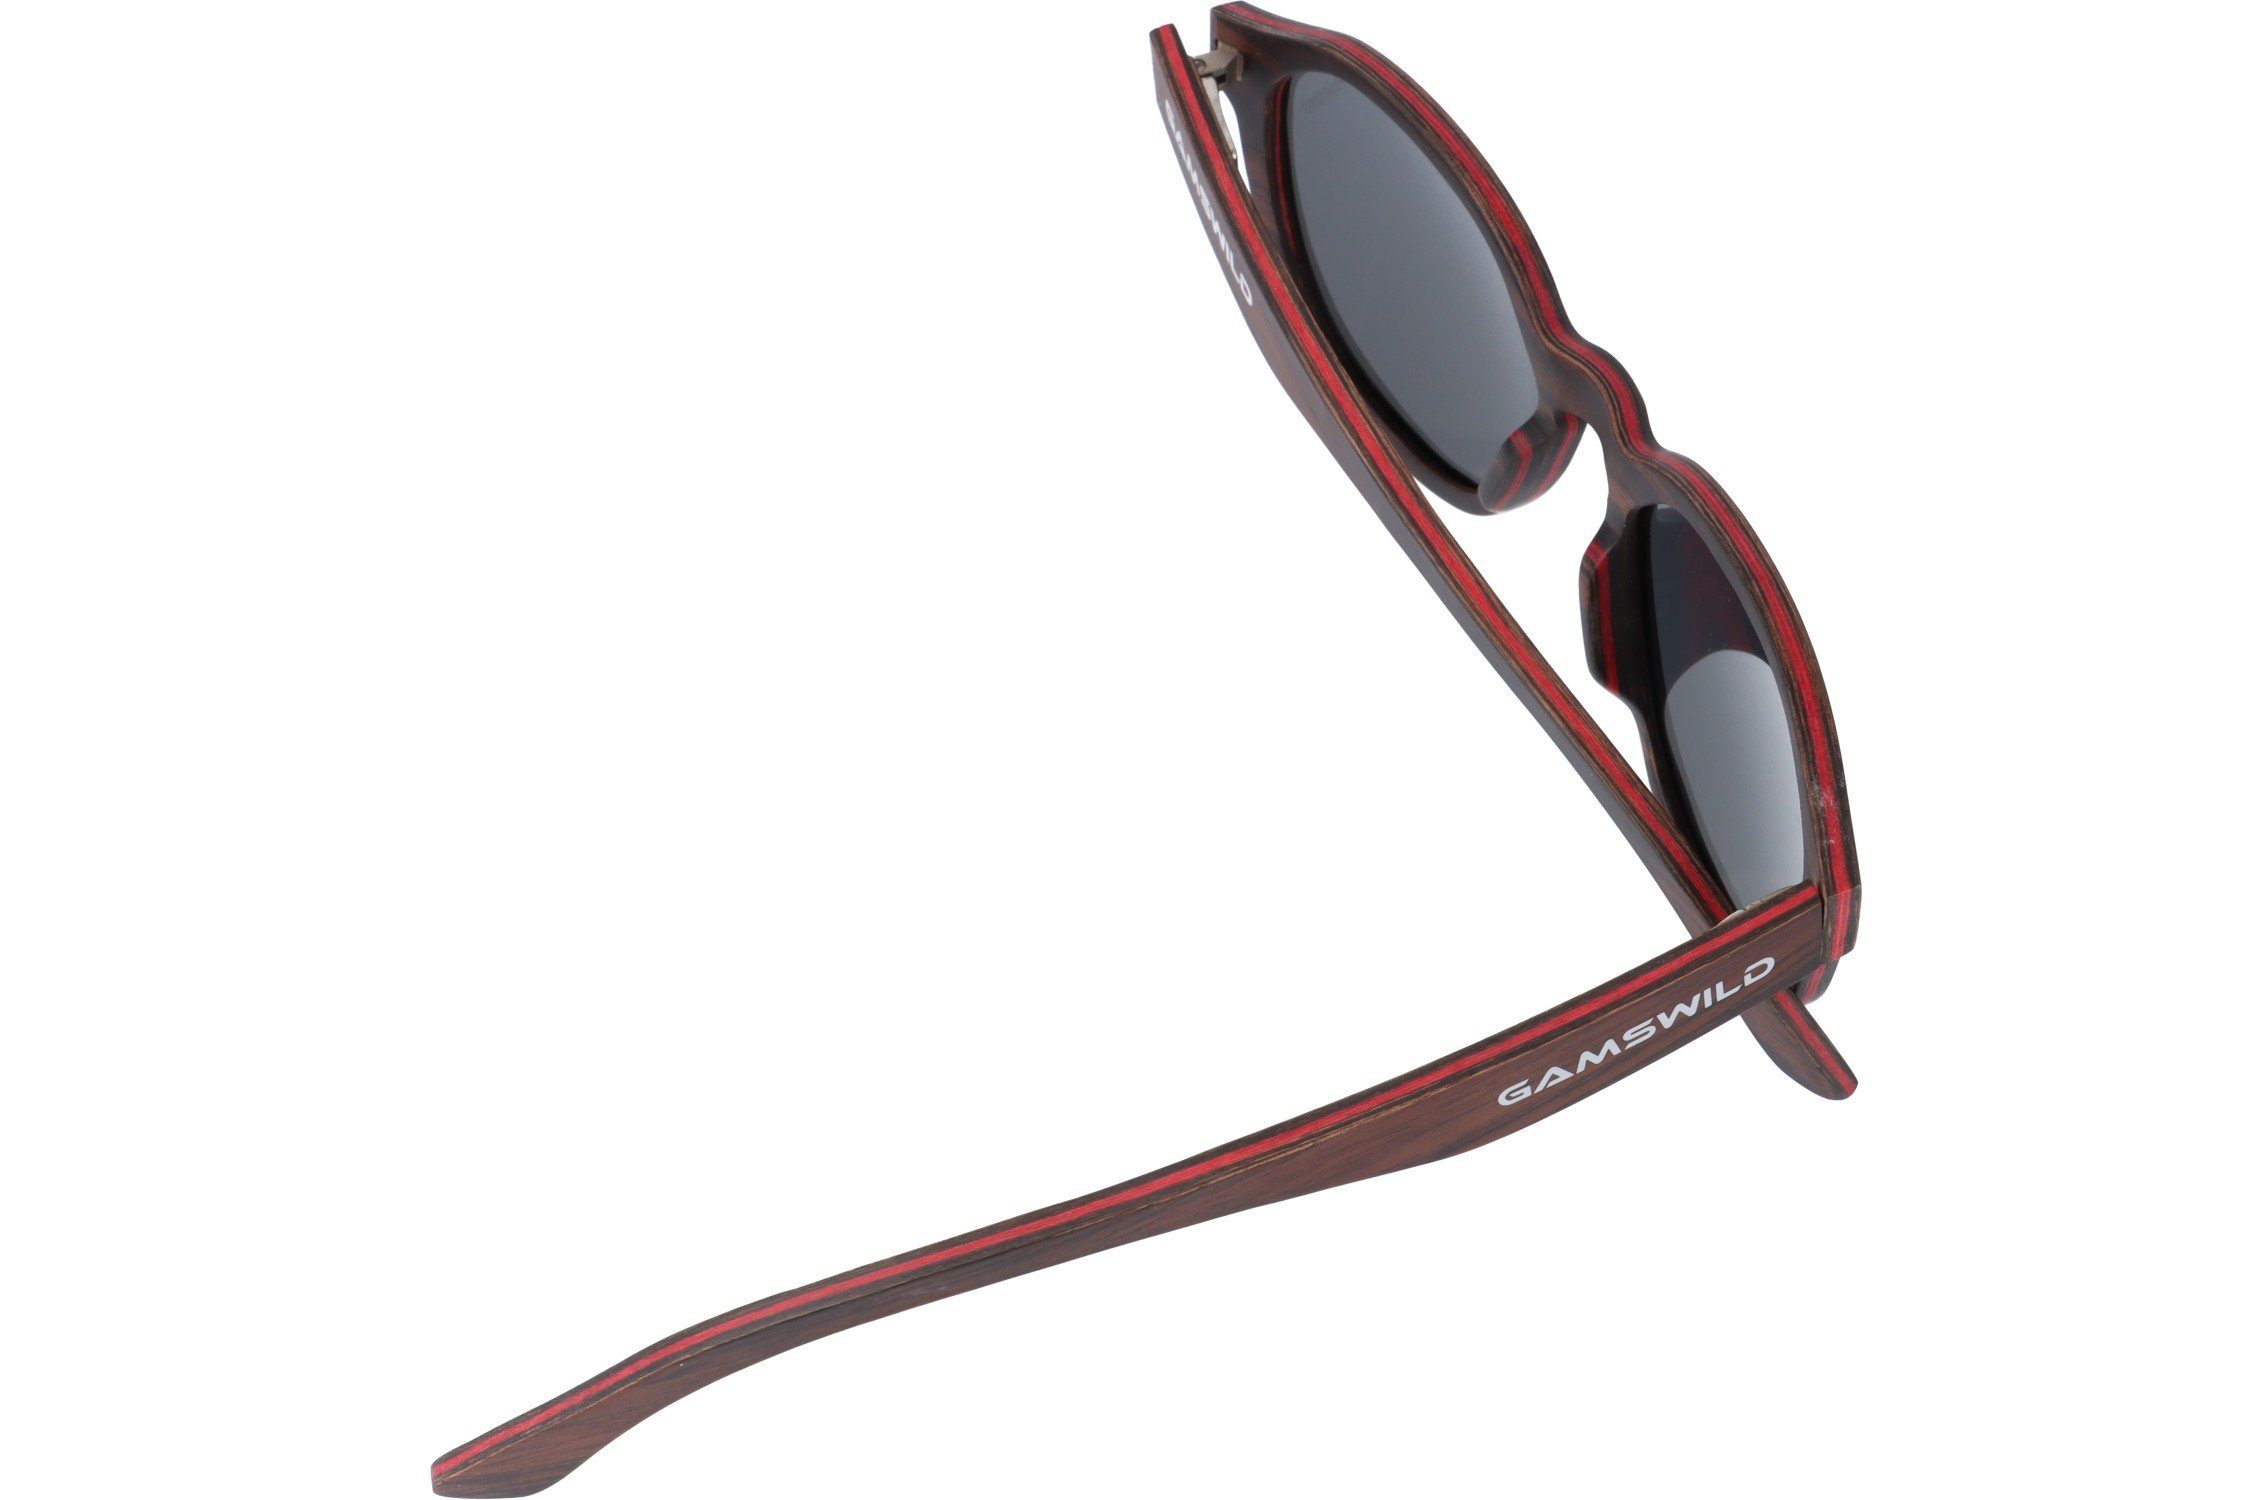 Gamswild Sonnenbrille GAMSSTYLE lila Gläser Unisex, braun, Herren Damen polarisierte WM0013 in Holzbrille Brille grau